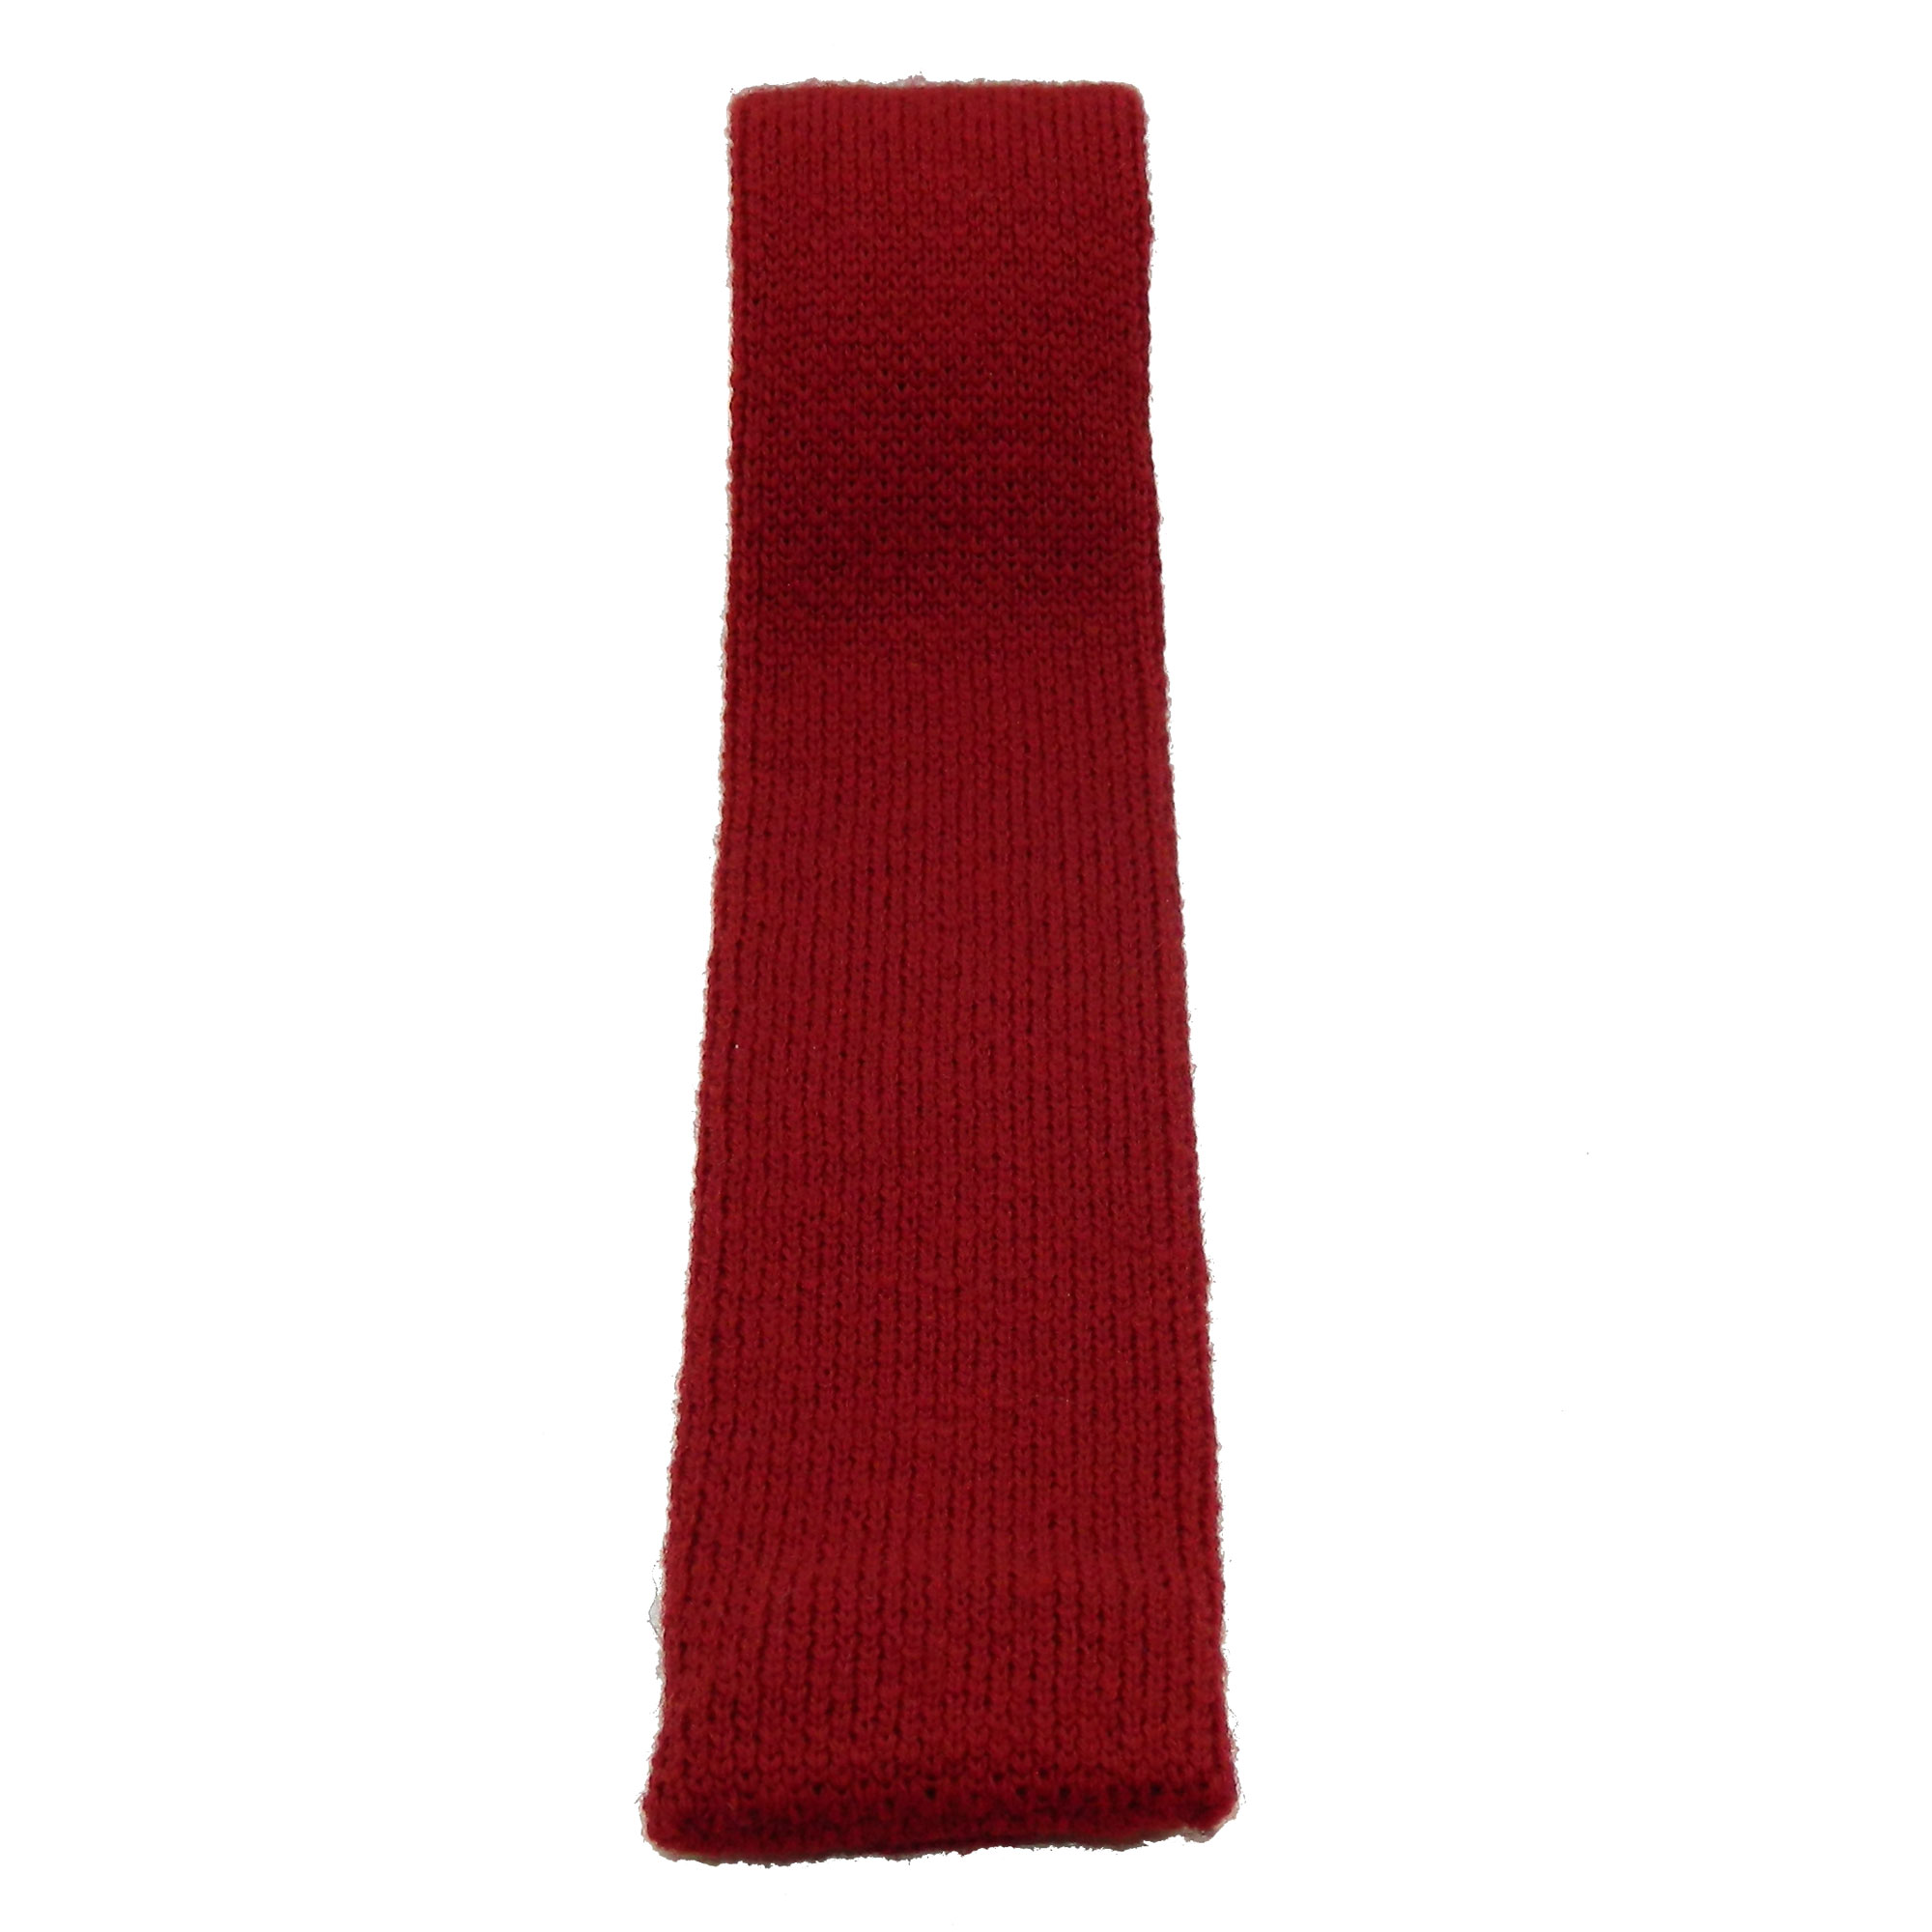 1980s Calvin Klein knit tie